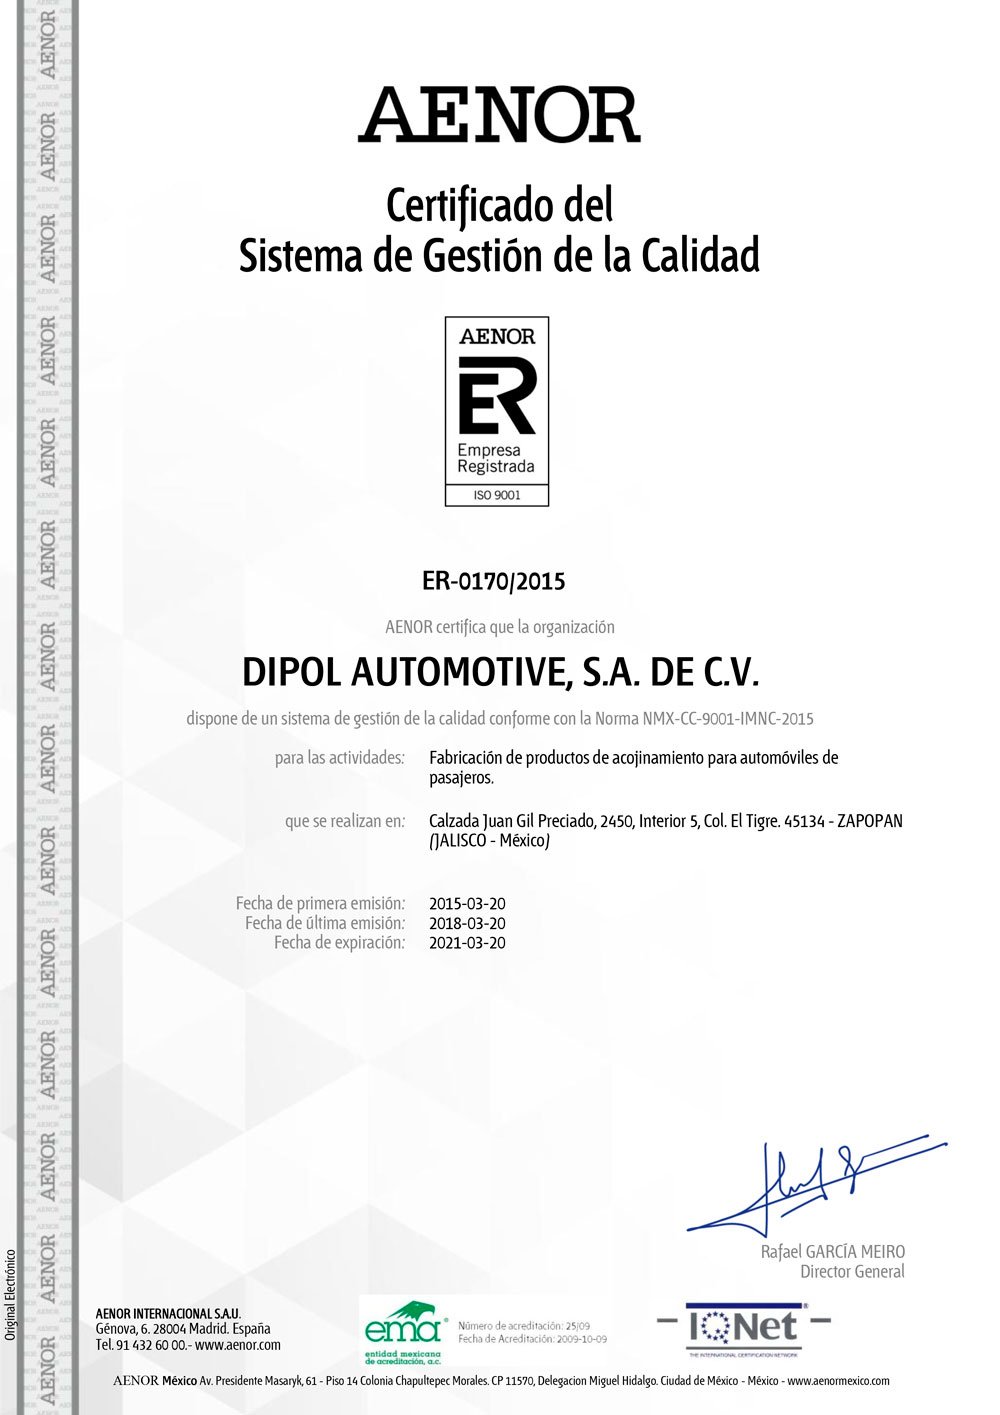 CertificadoEmaER-0170-2015_ES_2018-02-27